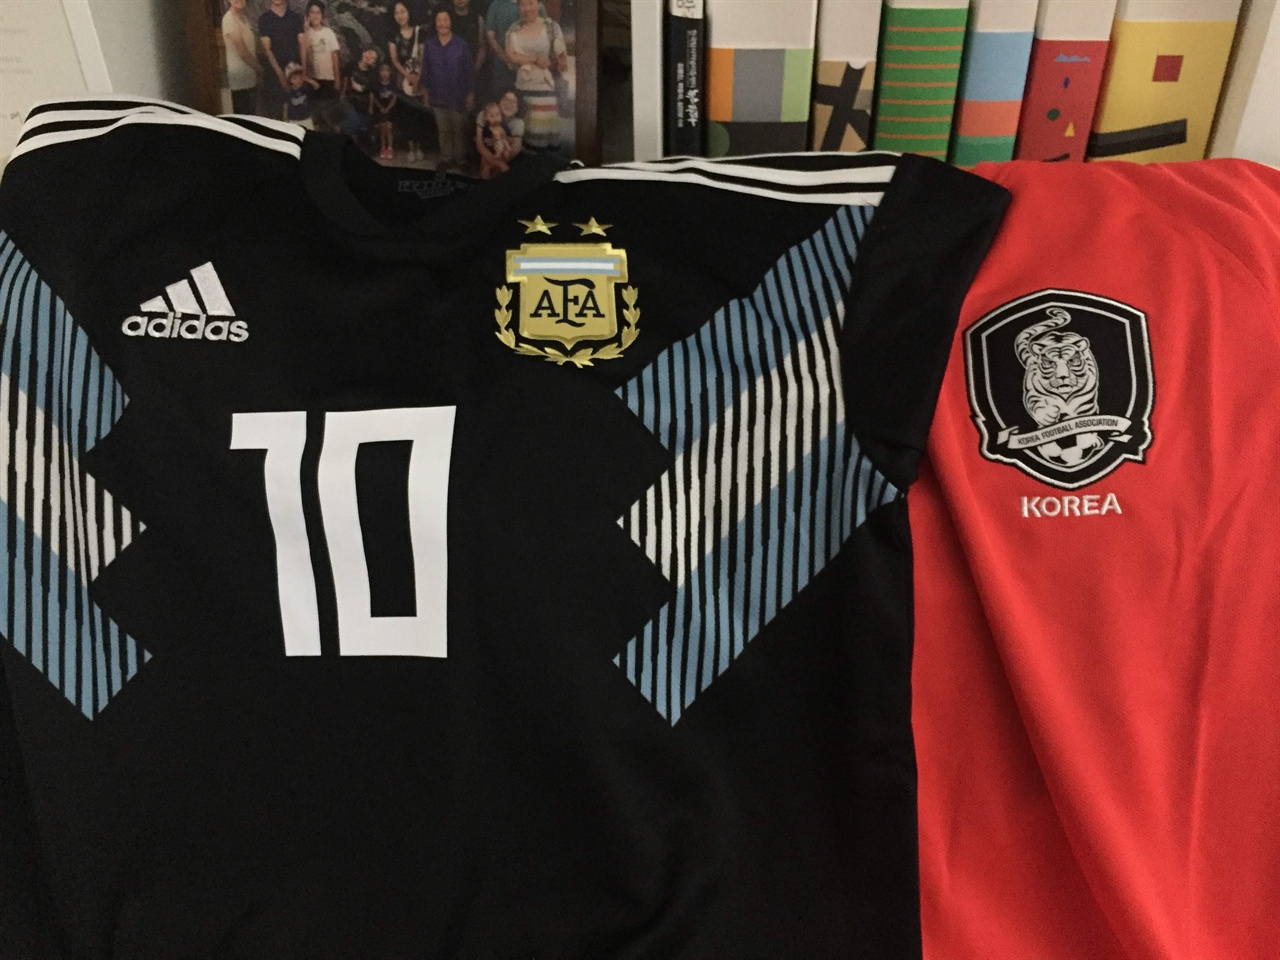 준비했습니다, 유니폼! 앗, 메시님을 보기 위해 유니폼에 이름까지 넣었는데, 정작 아르헨티나의 표는 한 장도 구하지를 못했습니다. 역시, 아르헨티나와 메시만은 '잊혀진 월드컵'에서도 결코 잊혀지지 않네요. 